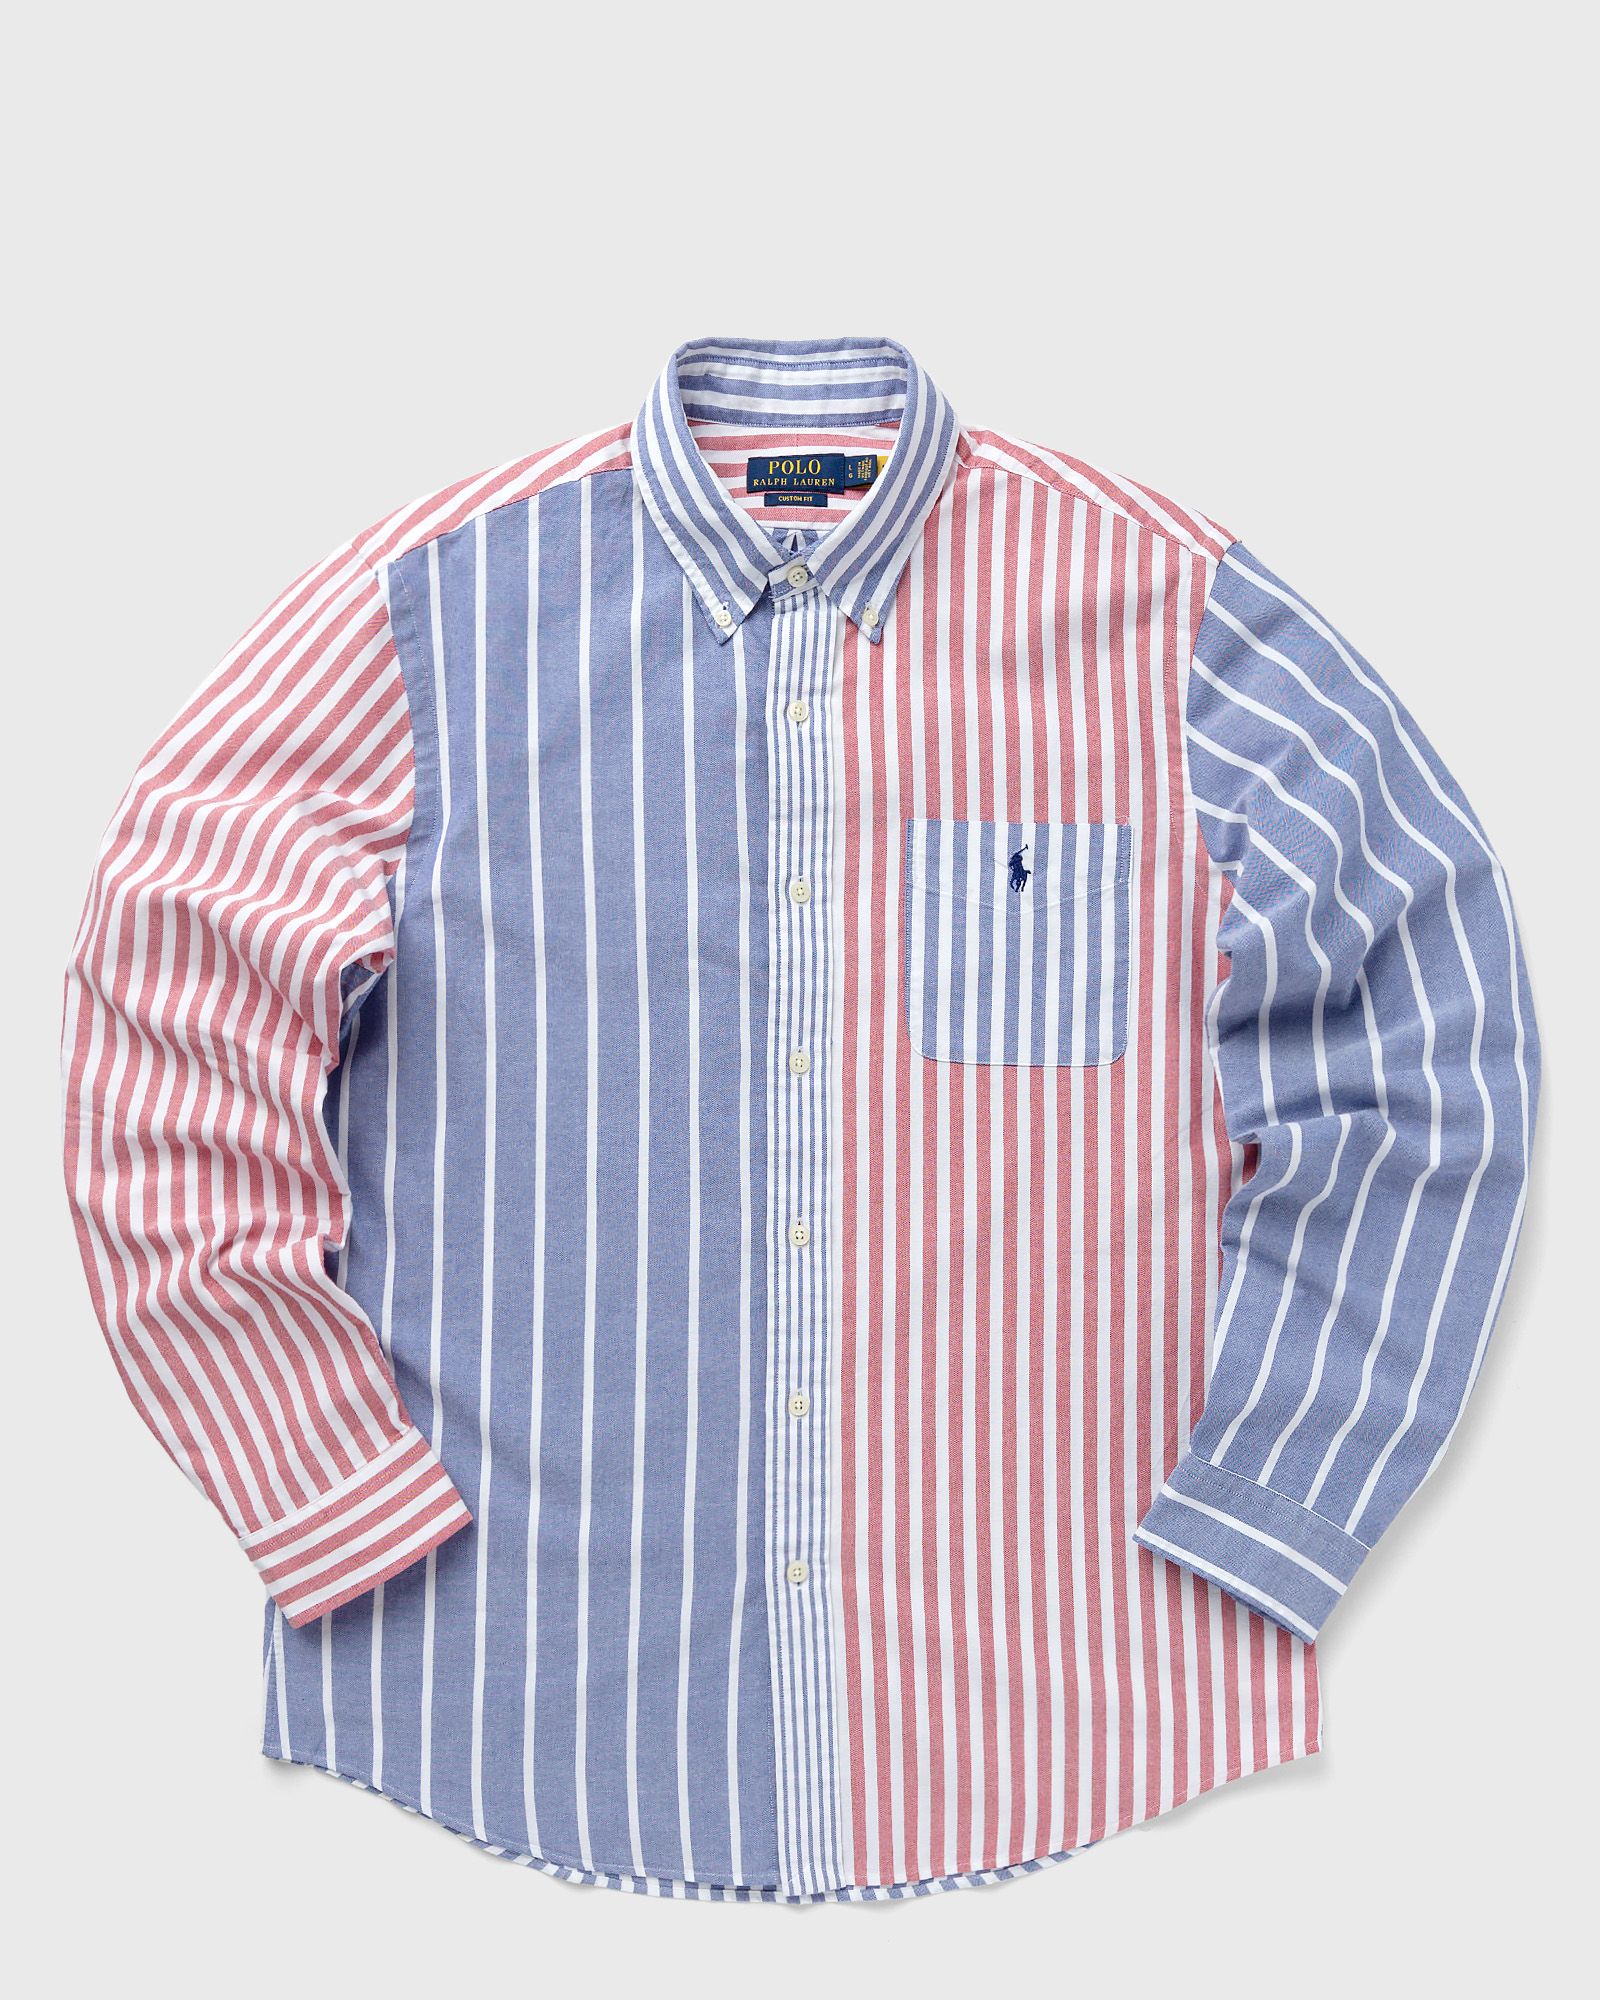 Polo Ralph Lauren - long sleeve-sport shirt men longsleeves multi in größe:m